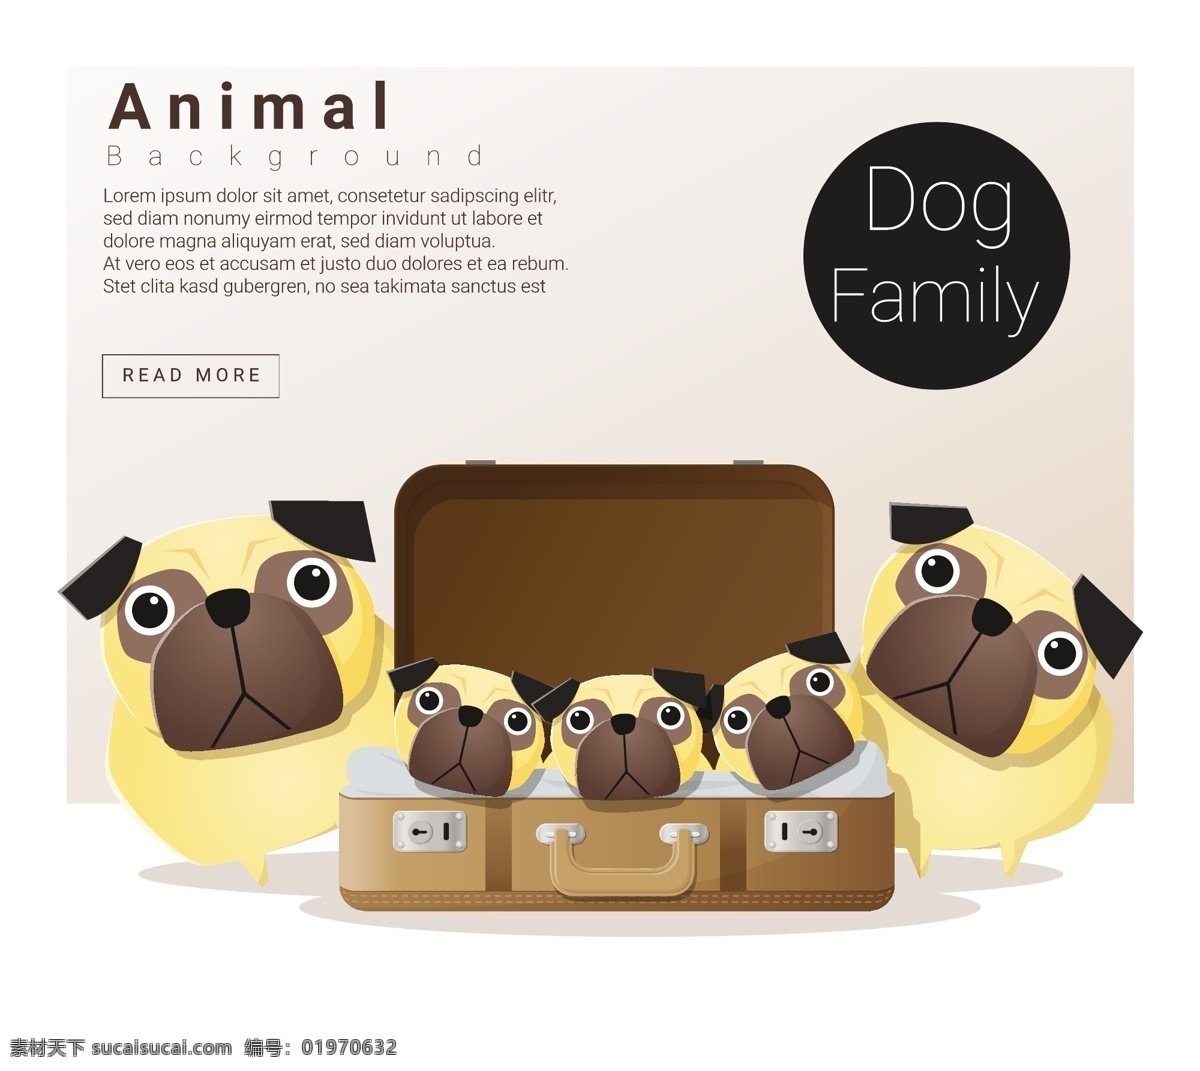 可爱 狗 家族 卡通 插画 矢量图 设计素材 动物 家庭 矢量 手绘